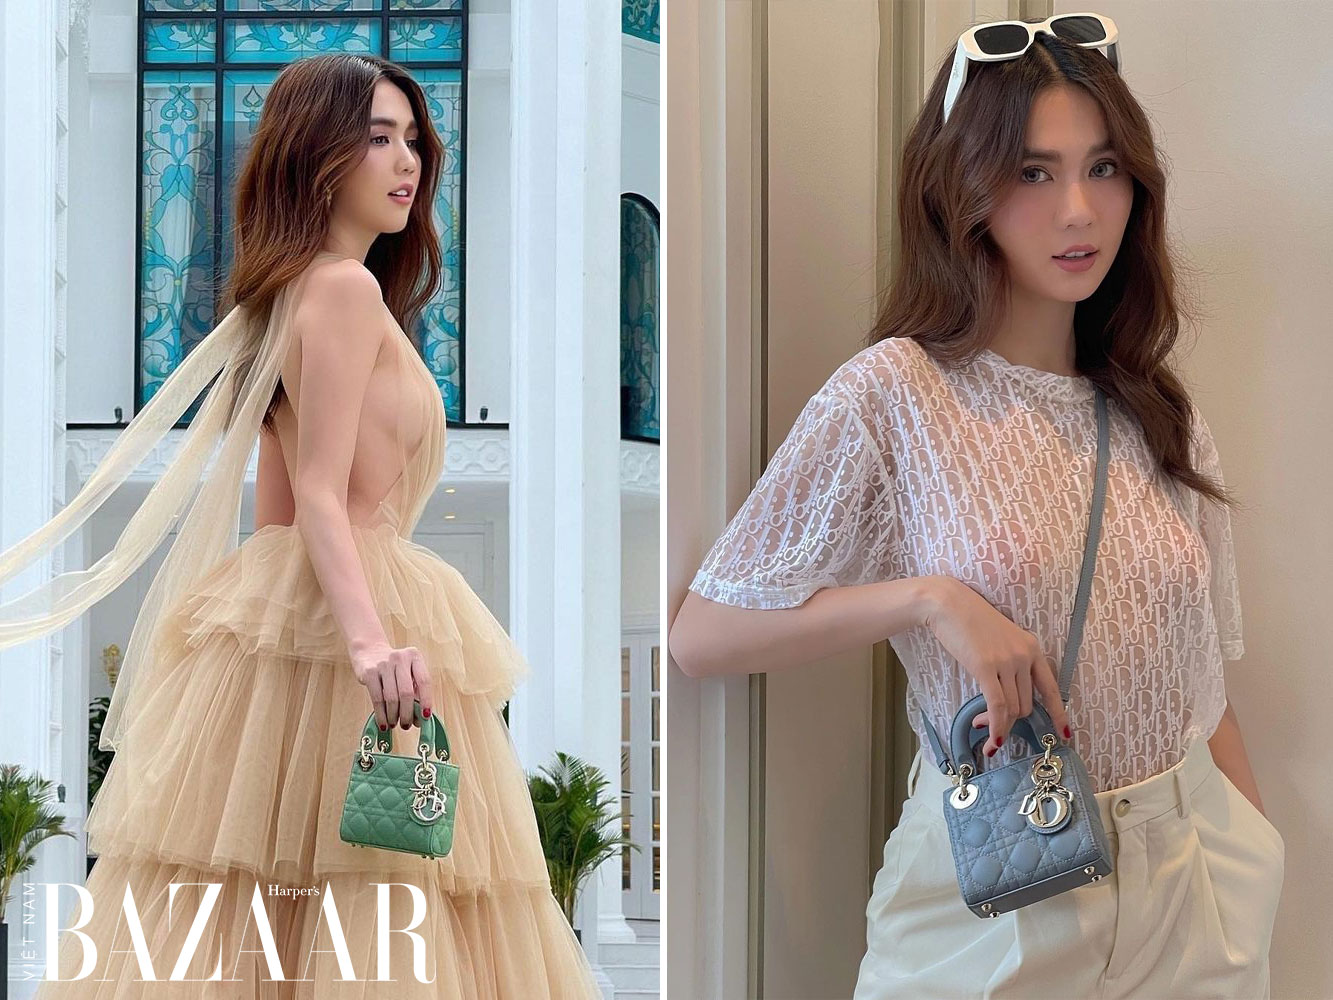 Nhiều người đẹp sắm túi tote Dior  VnExpress Giải trí